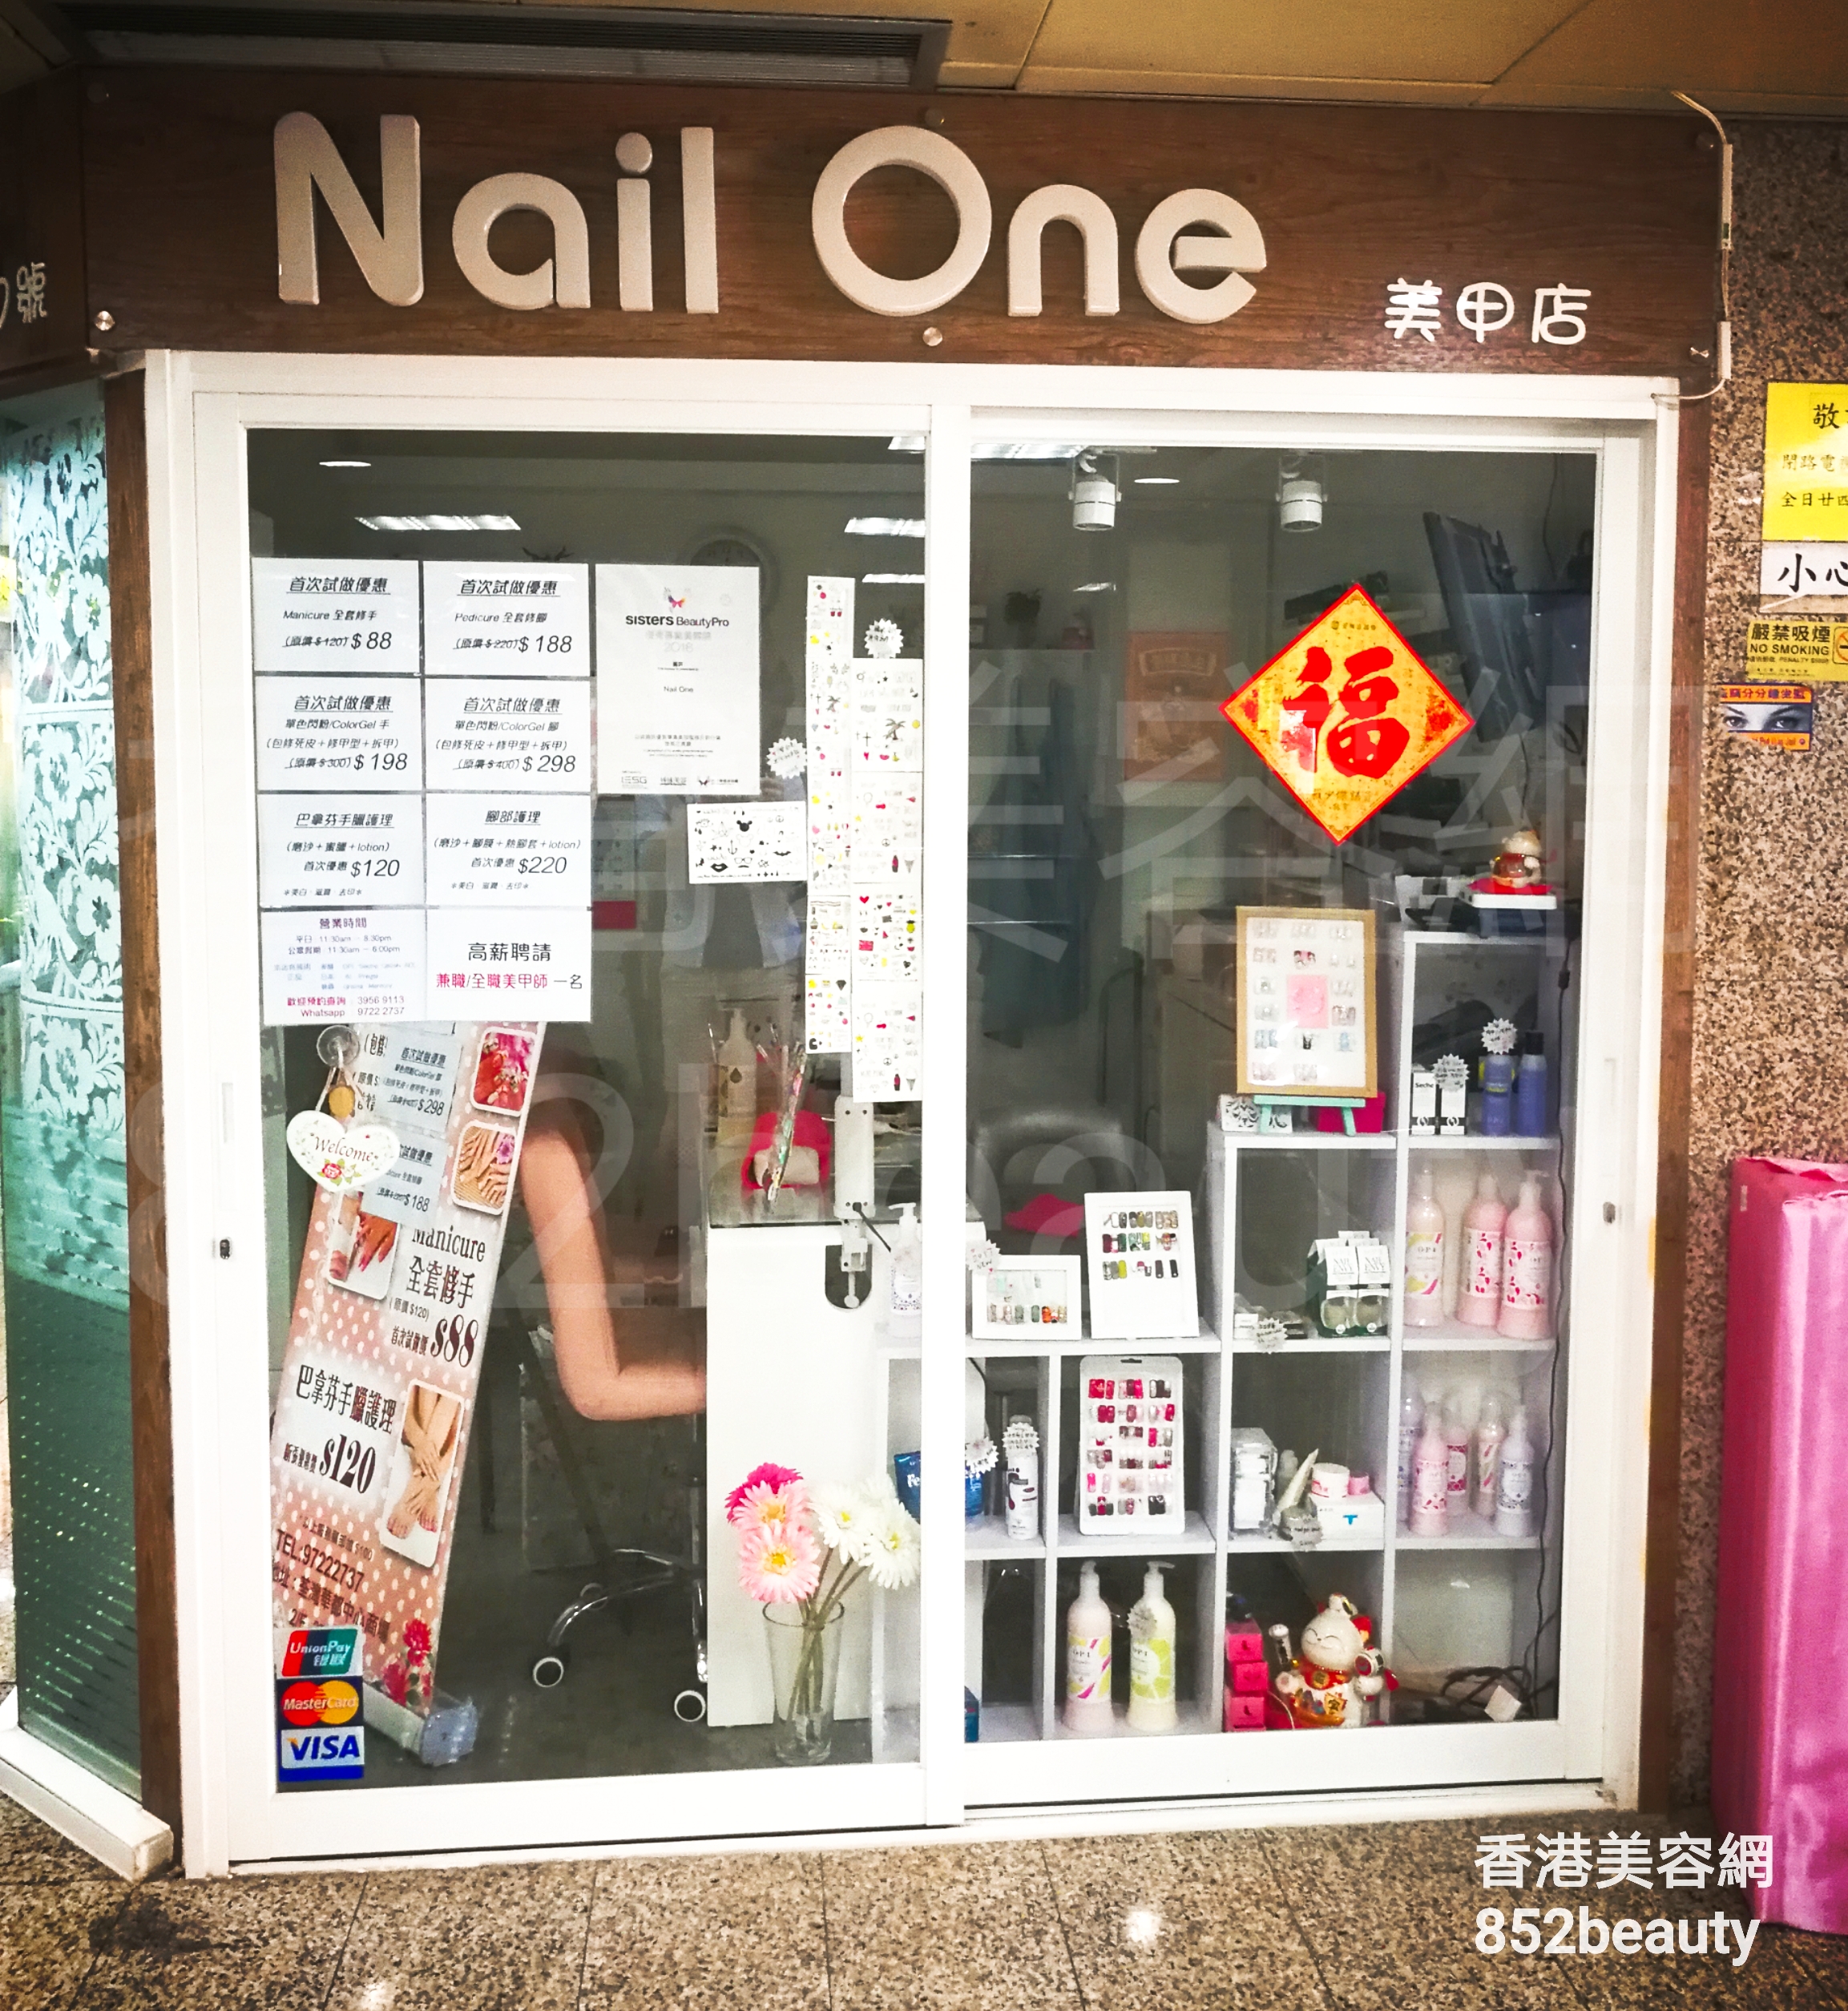 手腳護理: Nail One 美甲店